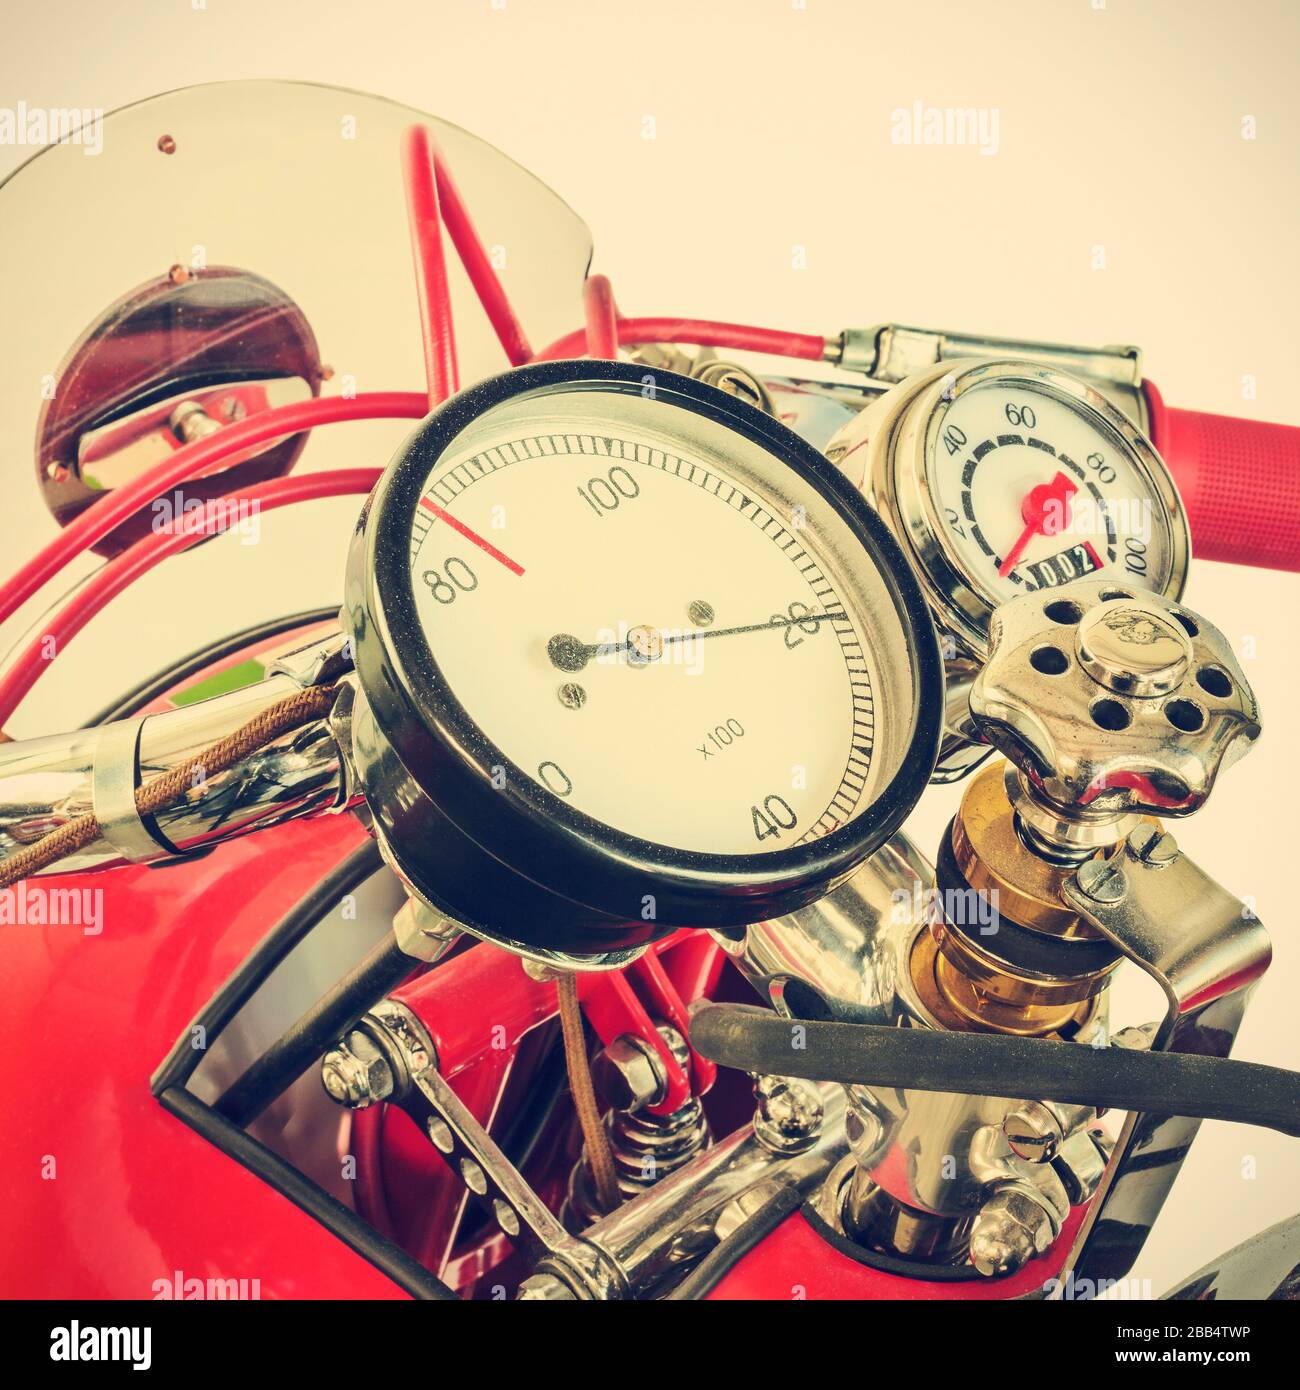 Immagine in stile retrò del tachimetro di una moto da corsa rossa restaurata Foto Stock